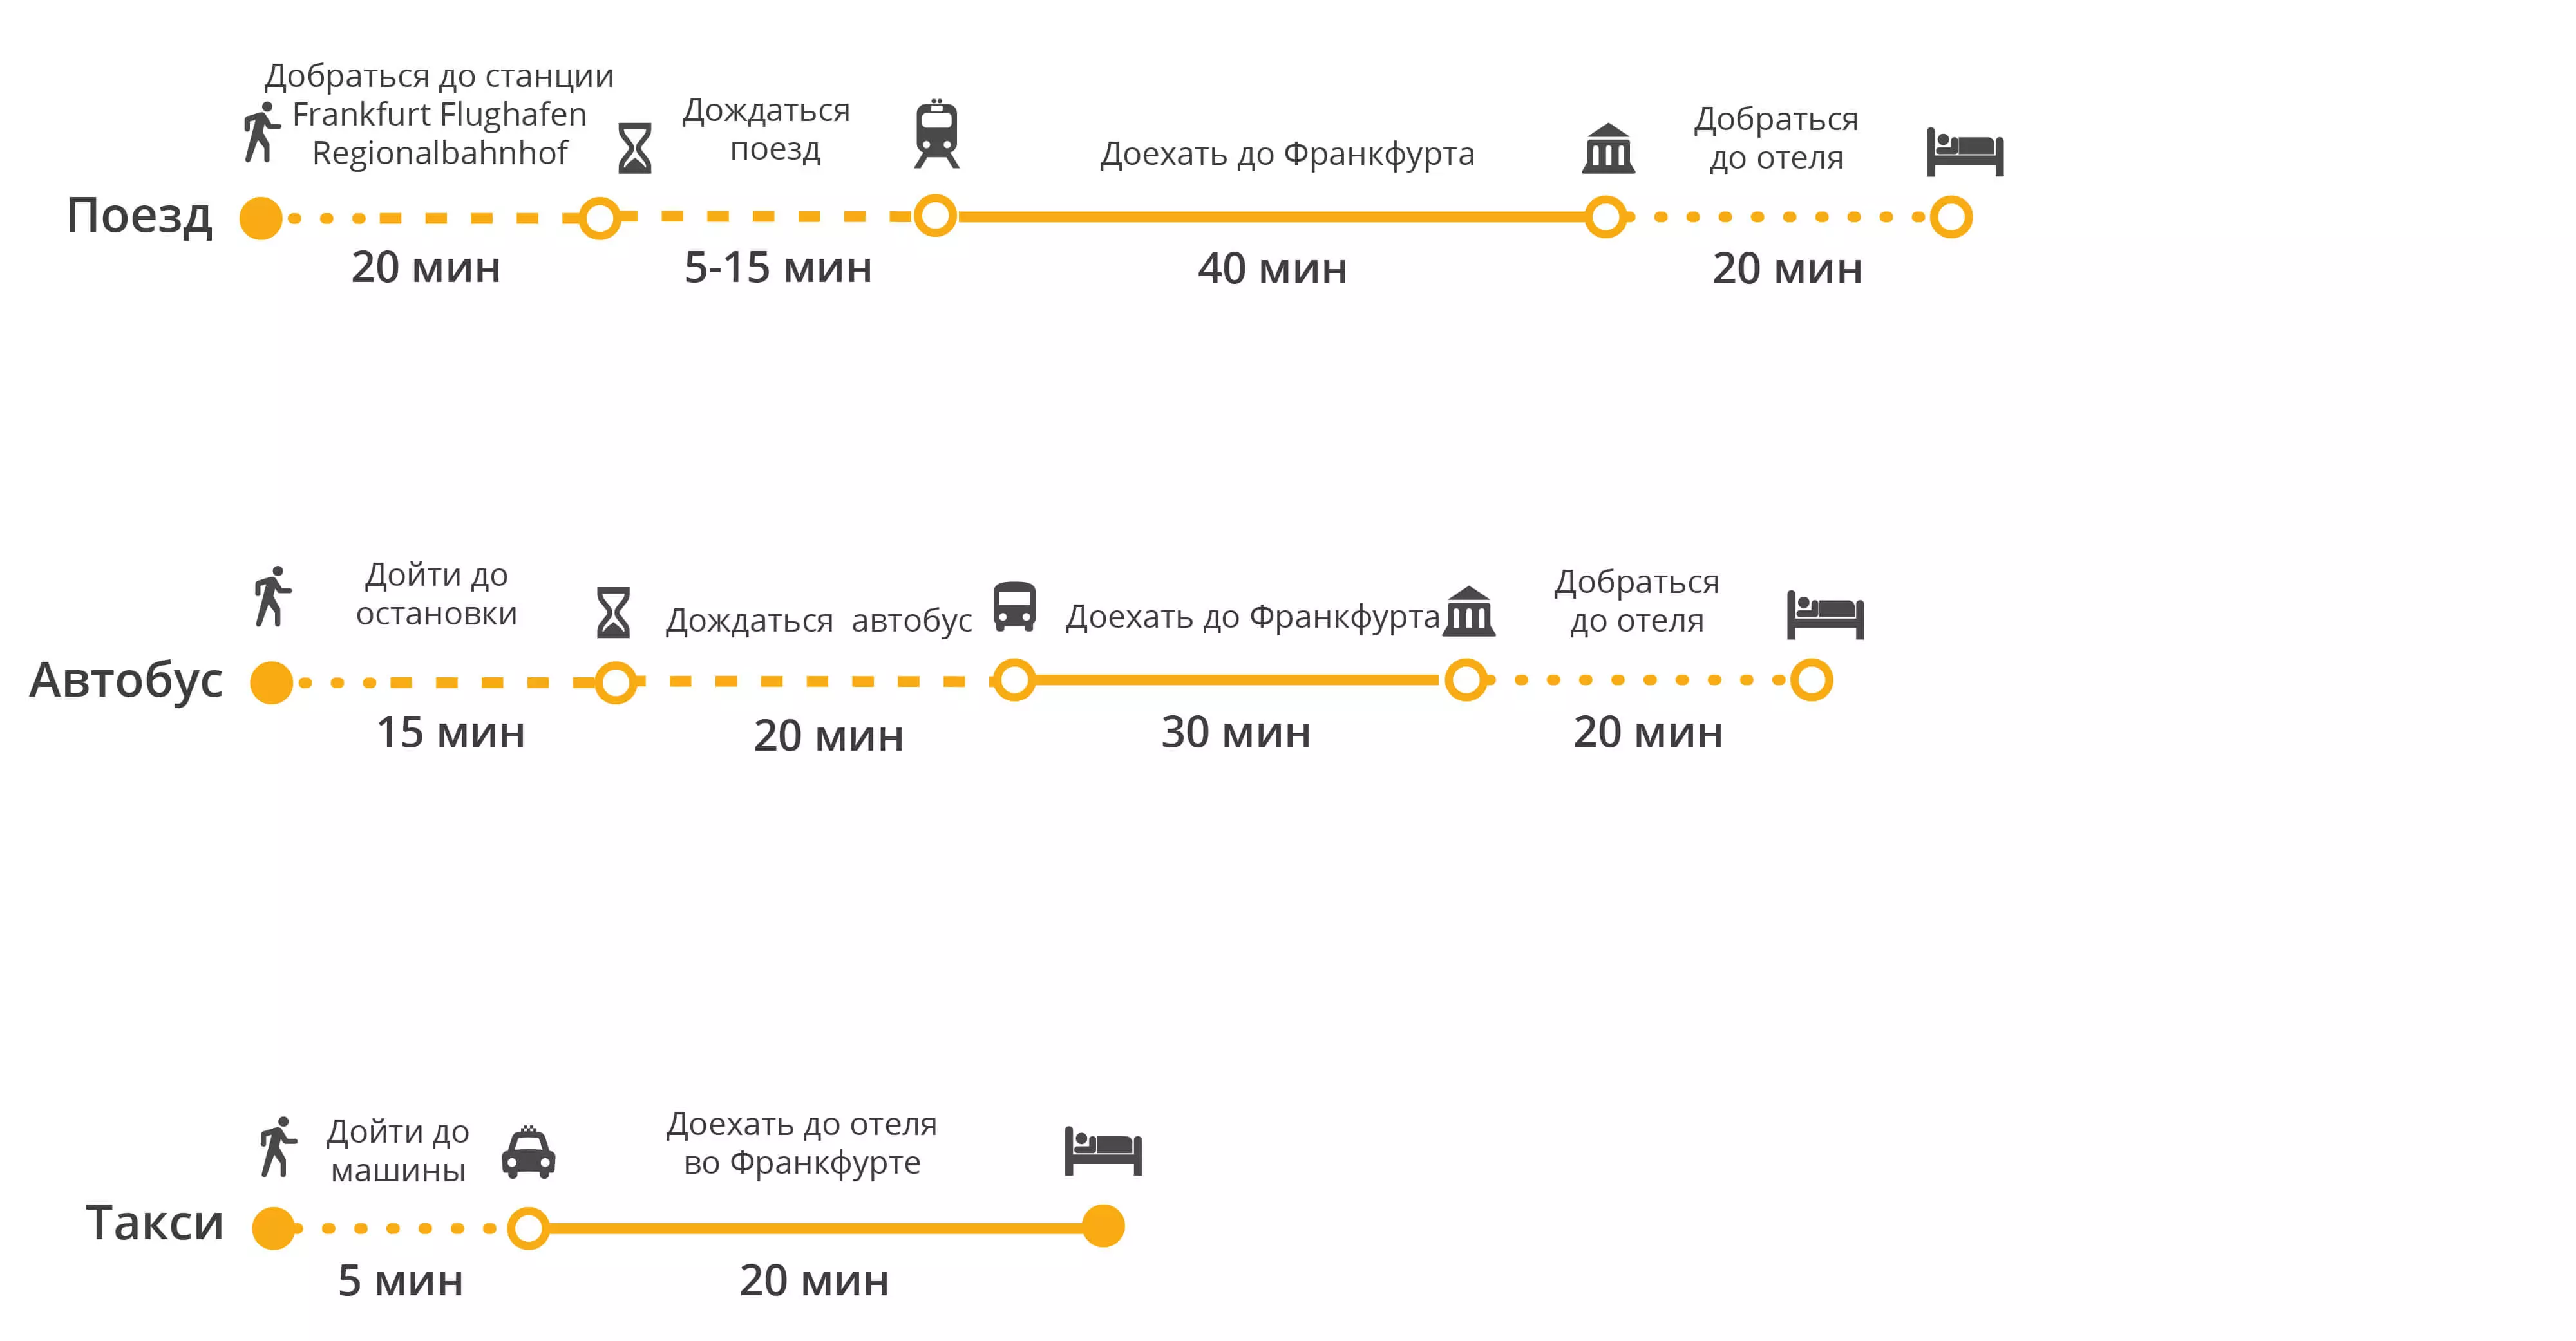 Обзор аэропорта франкфурта-на-майне: схема, терминалы, расписание, табло и отзывы туристов — как добраться до города